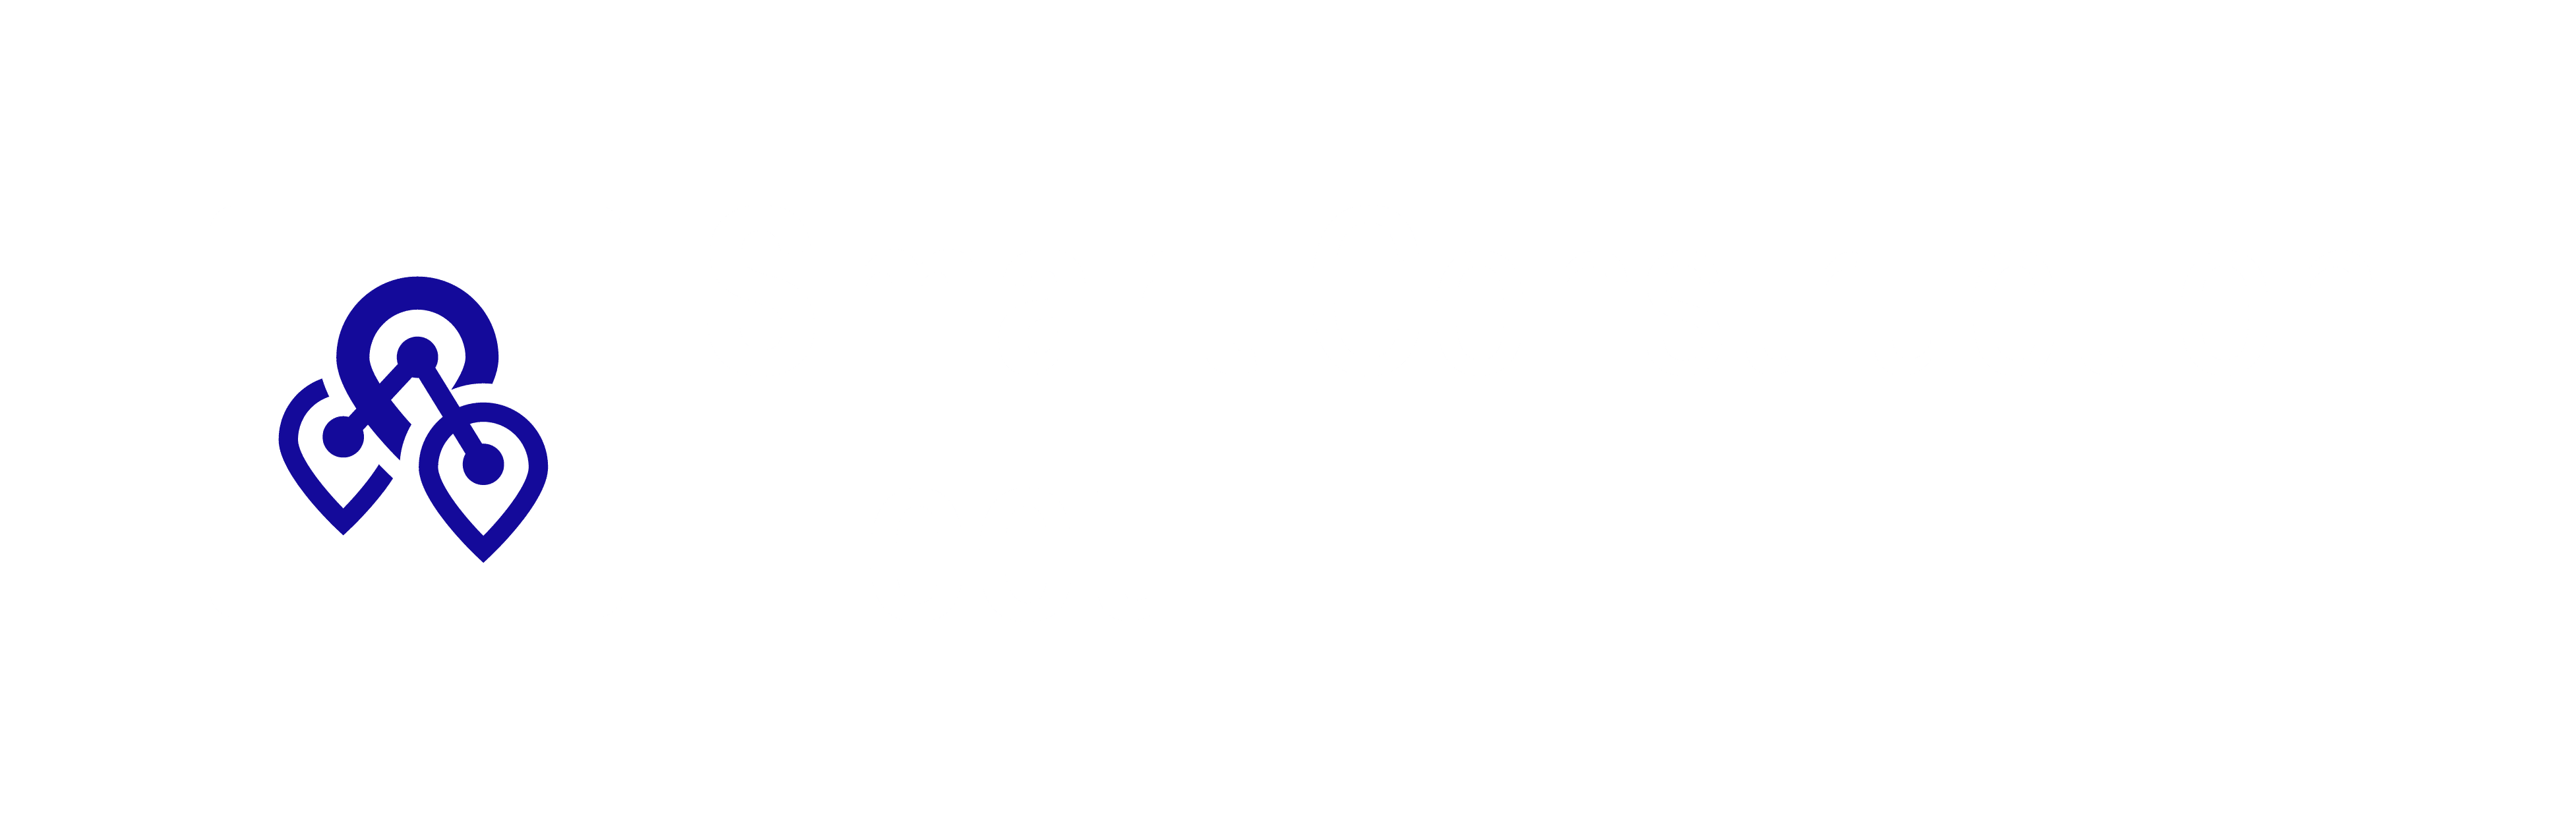 Smart Construction Fleet